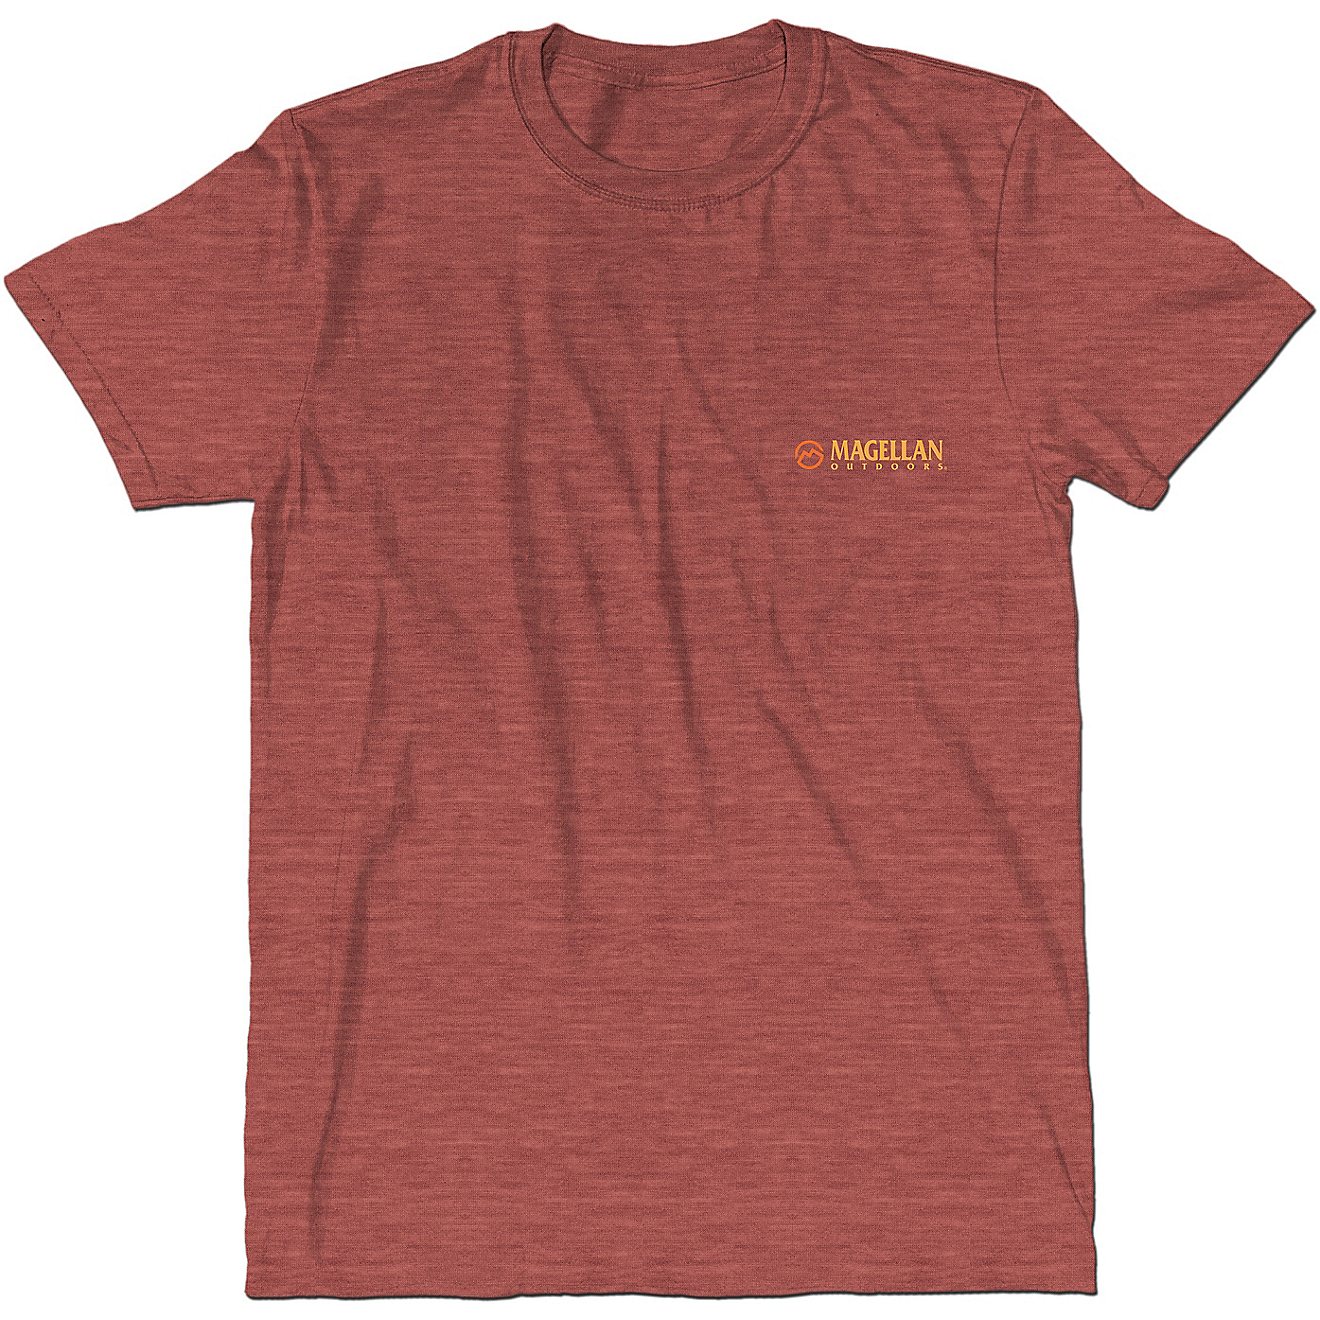 Magellan Outdoors Men's Sunset Bass Graphic Short Sleeve T-shirt                                                                 - view number 2